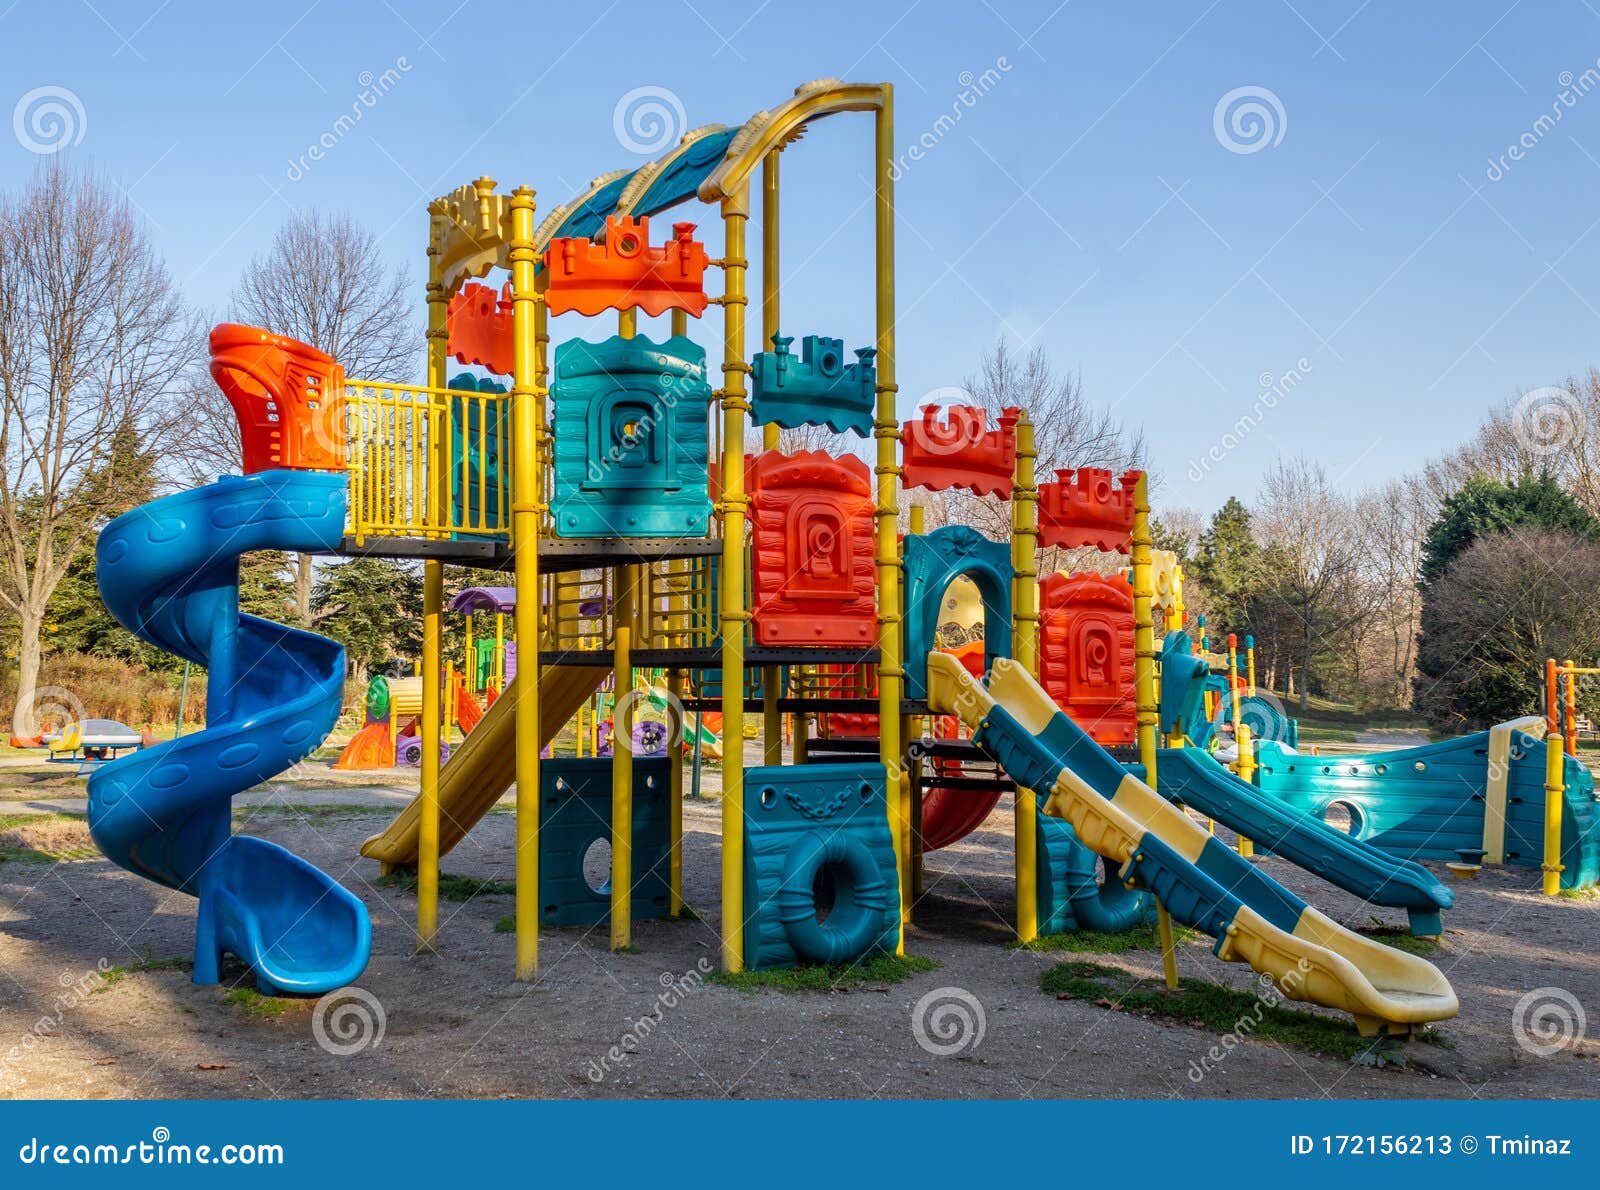 Percepción Dominante Confundir Parque Infantil Colorido Toboganes Infantiles Y Zona De Juegos De Material  Plástico Imagen de archivo - Imagen de parque, estructura: 172156213